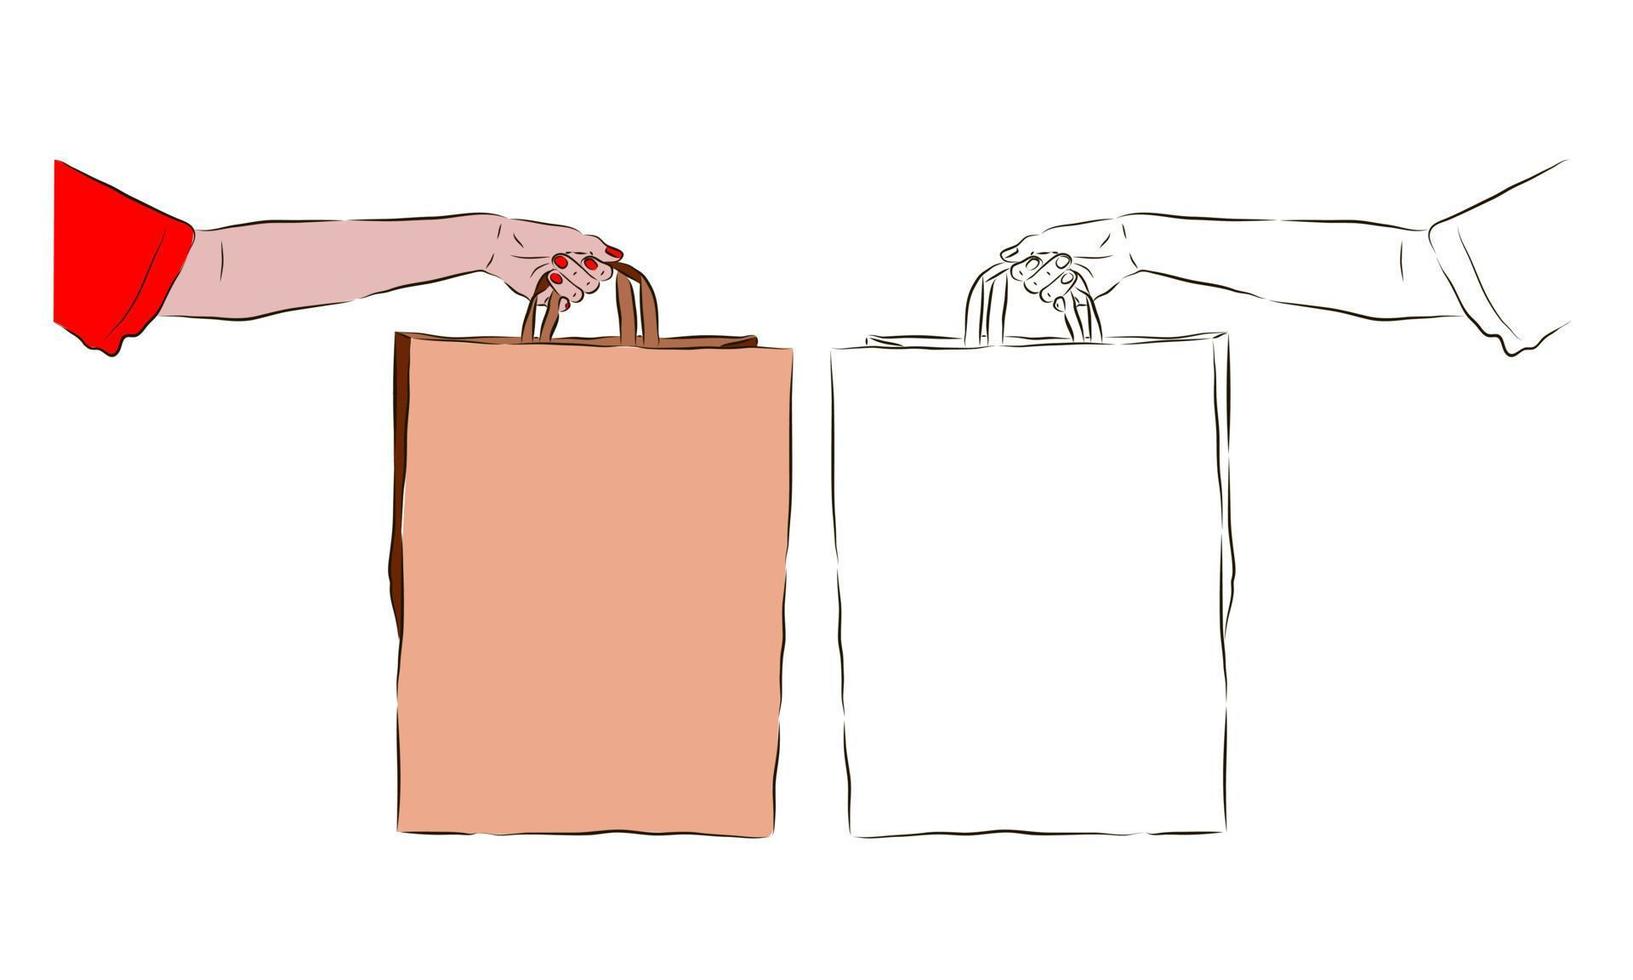 la mano sostiene una bolsa de papel marrón, así como en blanco y negro. el concepto de compras y descuentos. vector